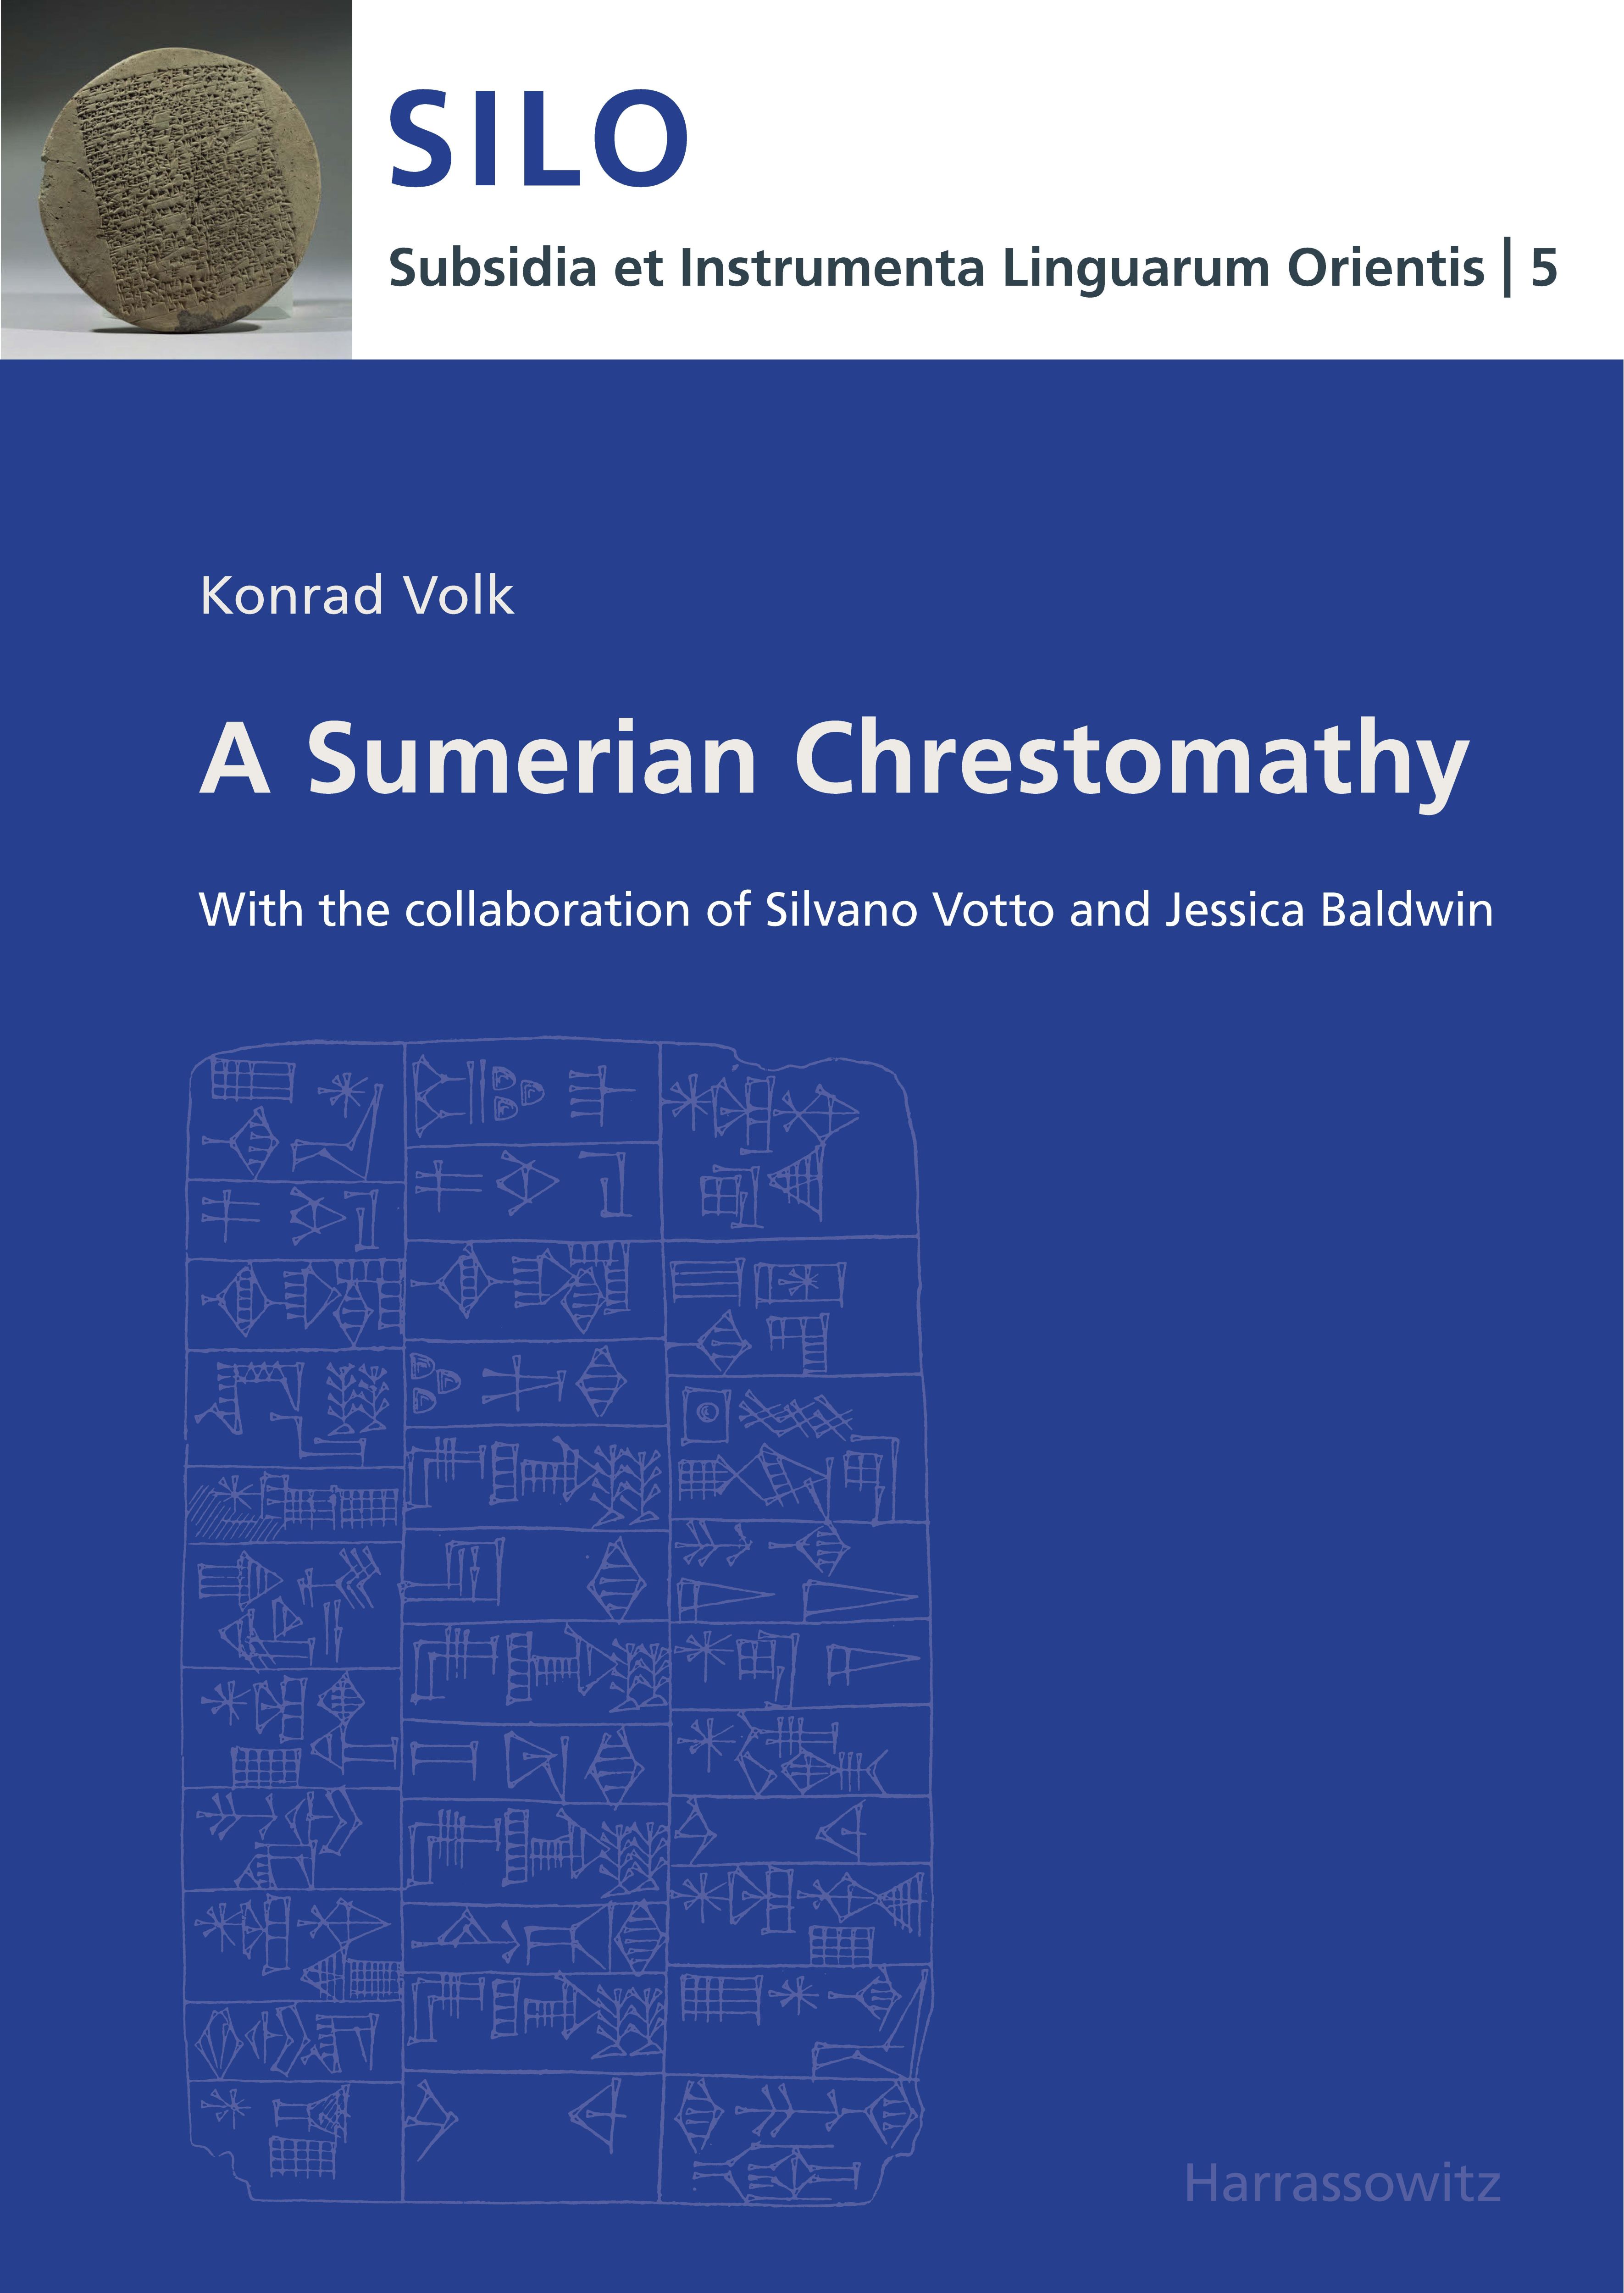 A Sumerian Chrestomathy | With the collaboration of Silvano Votto and Jessica Baldwin | Konrad Volk | Taschenbuch | Englisch | 2012 | Harrassowitz Verlag | EAN 9783447067829 - Volk, Konrad